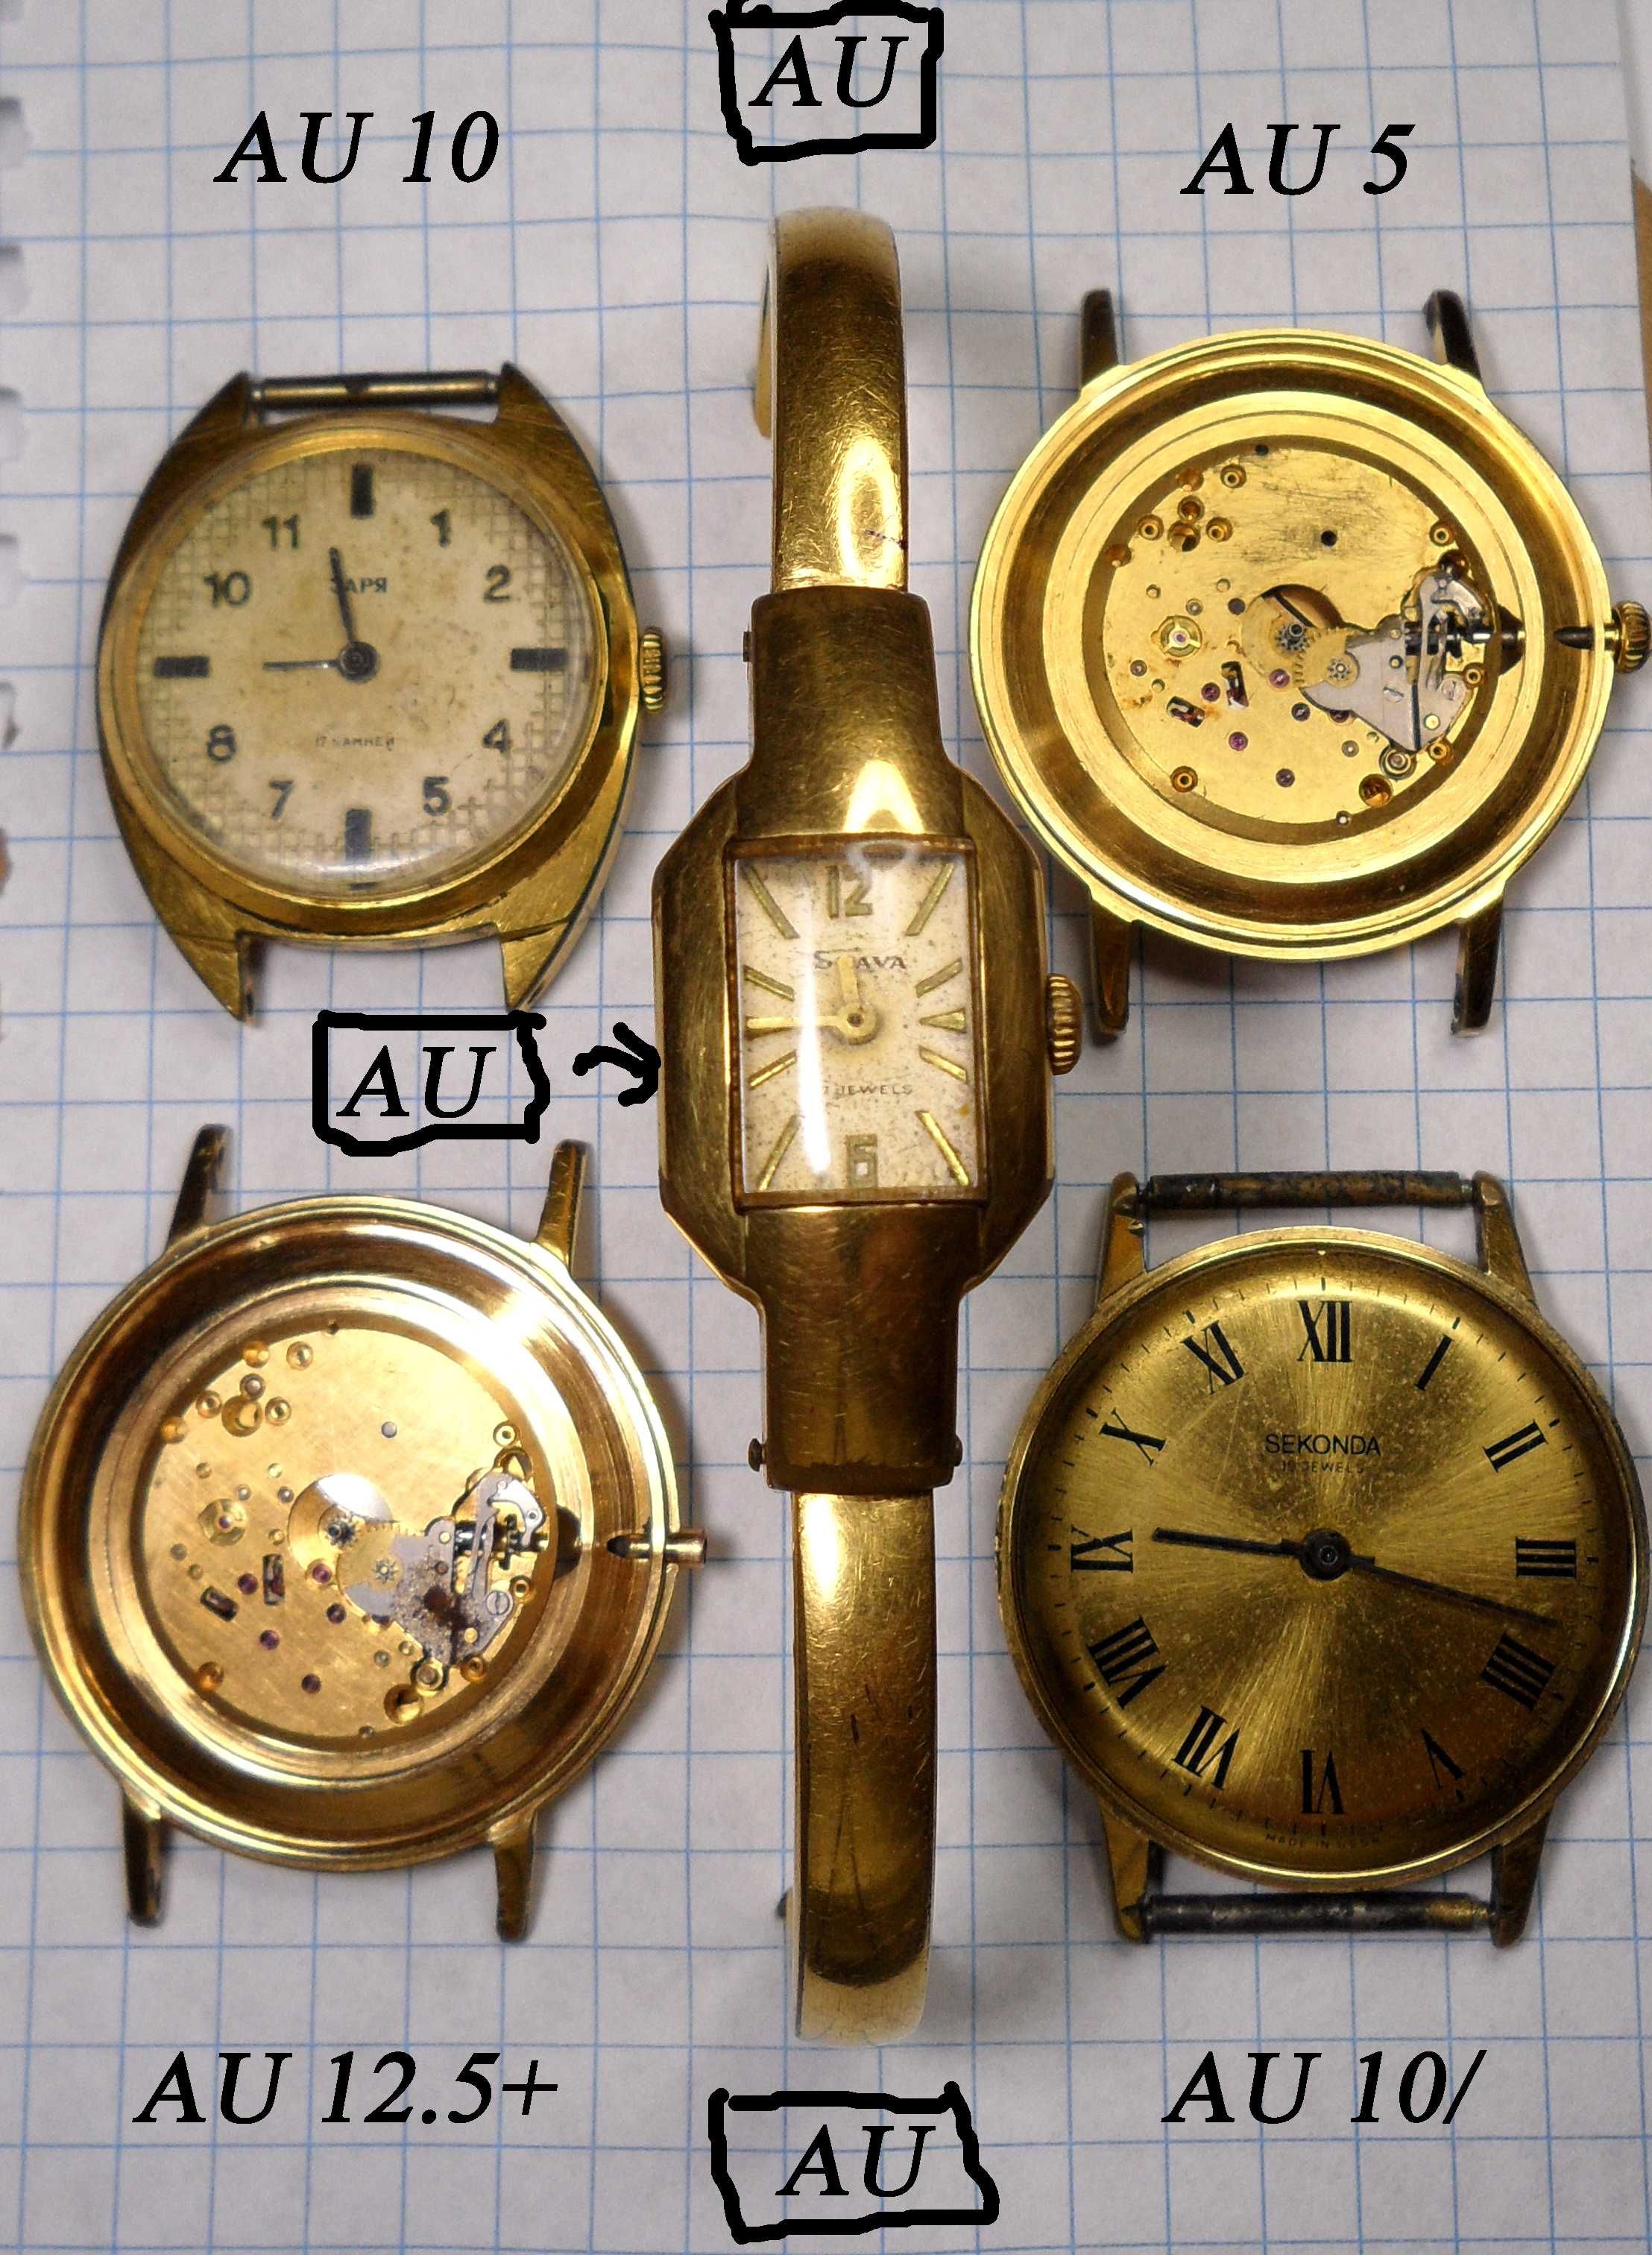 ПОЗОЛОЧЕННЫЕ часы ЛУЧ AU 12,5+ сделано в СССР 60-80-х. годах.